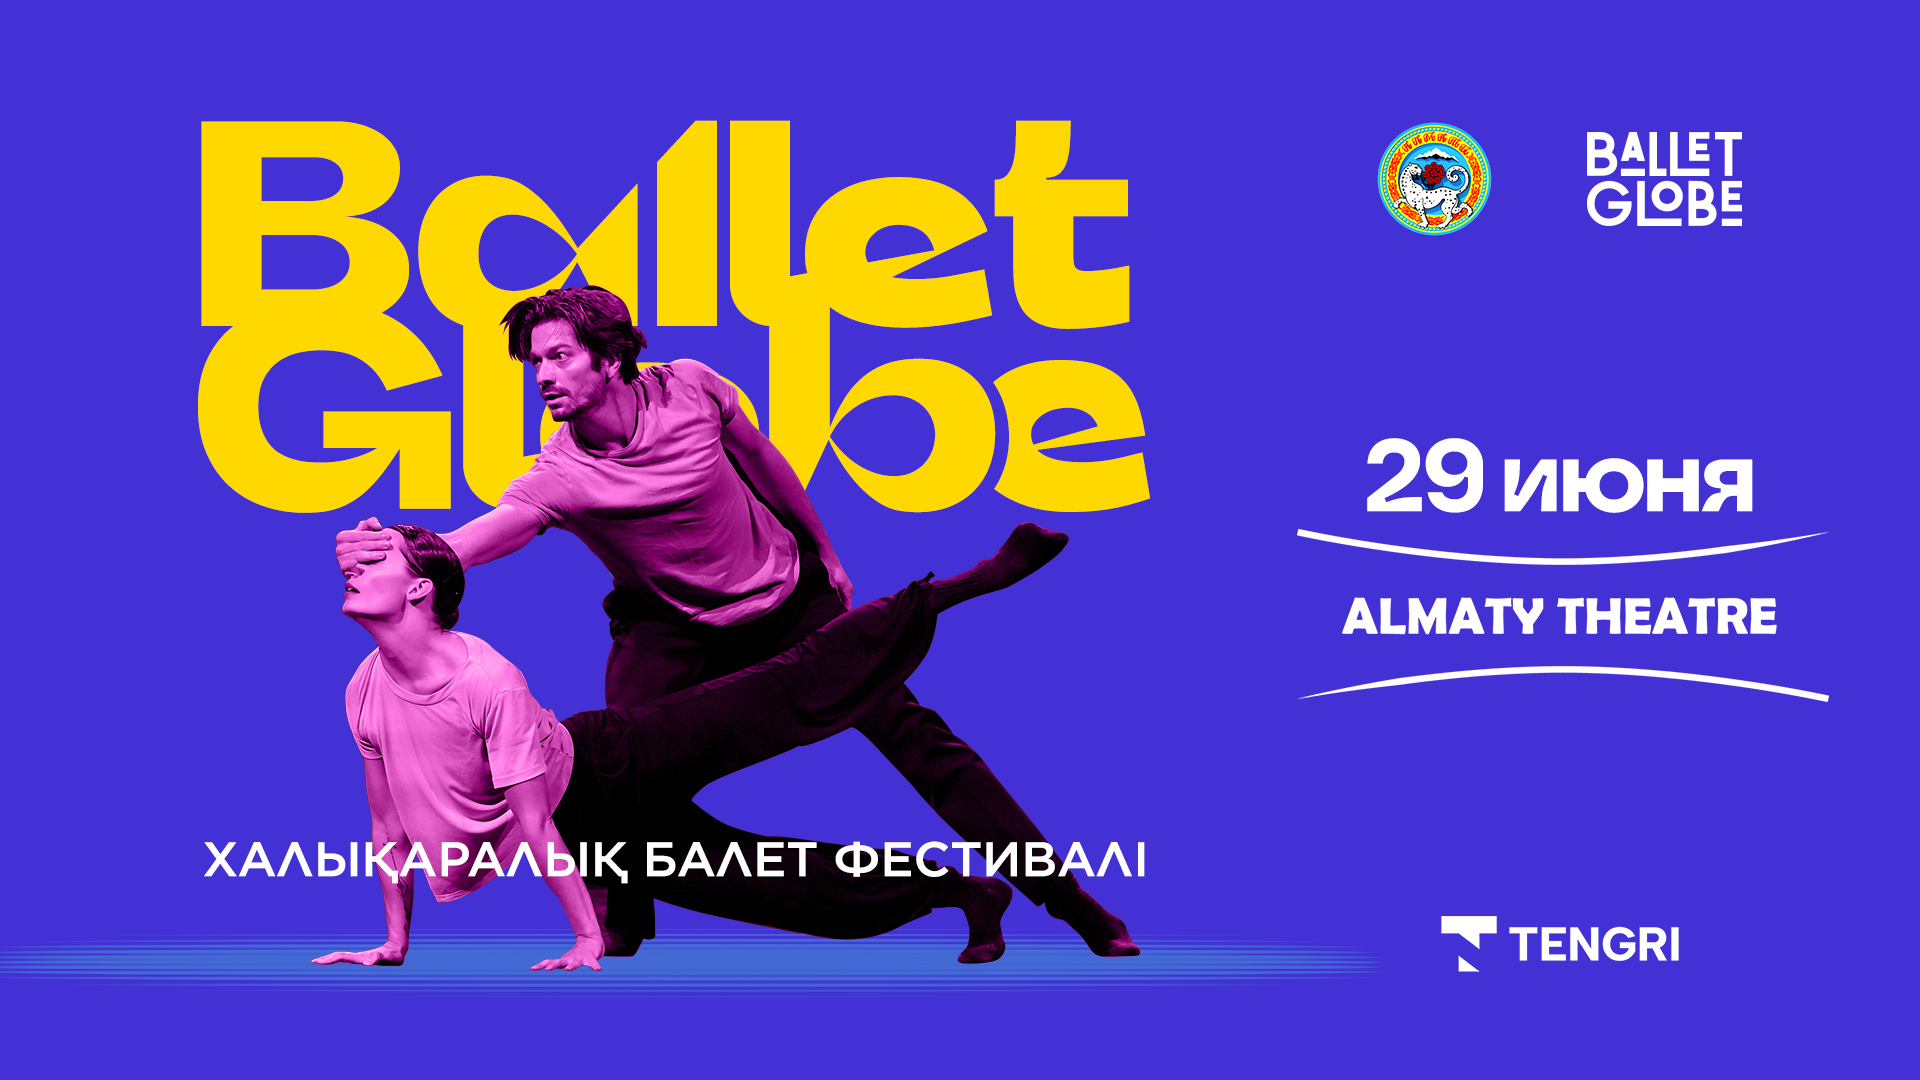 Международный фестиваль танца Ballet Gloobe представит алматинскому зрителю мировых звезд современного танца.